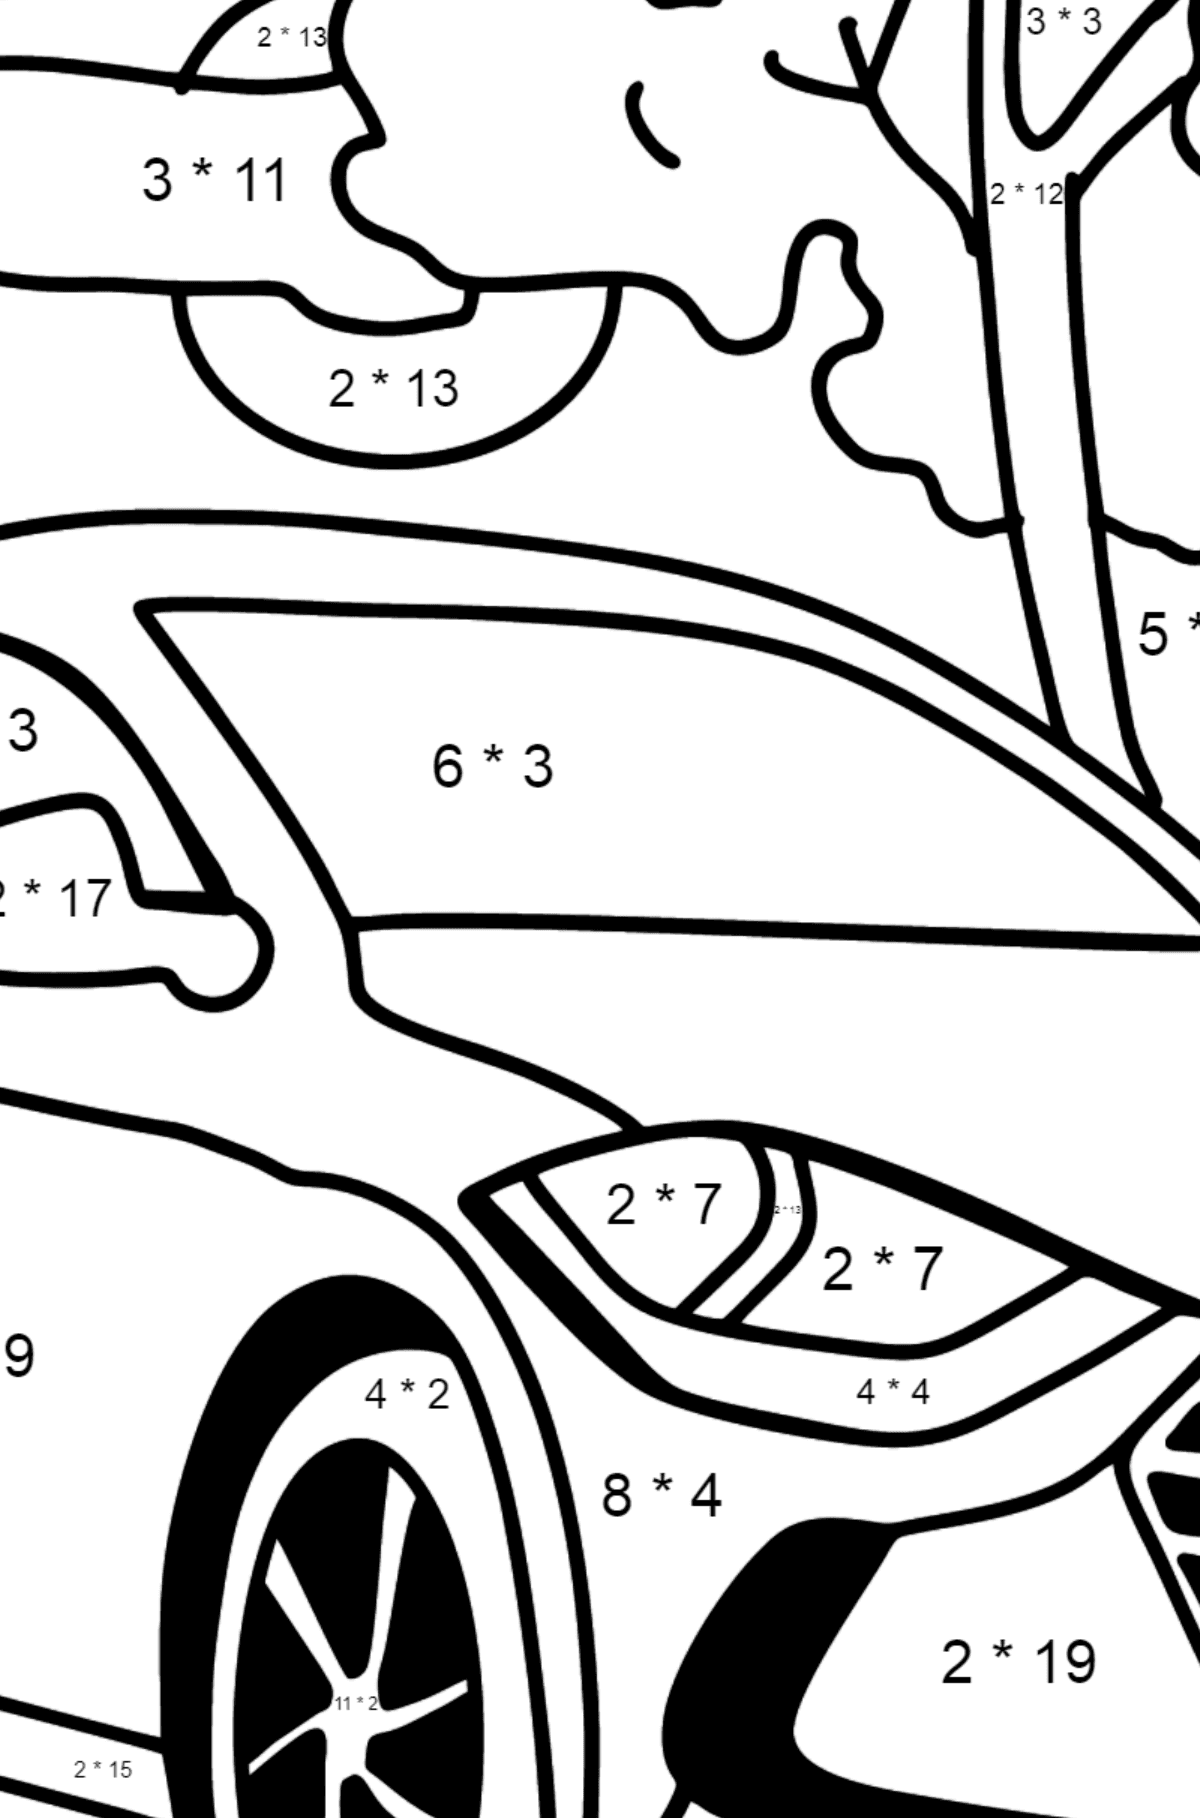 Dibujo de coche Hyundai para colorear - Colorear con Matemáticas - Multiplicaciones para Niños